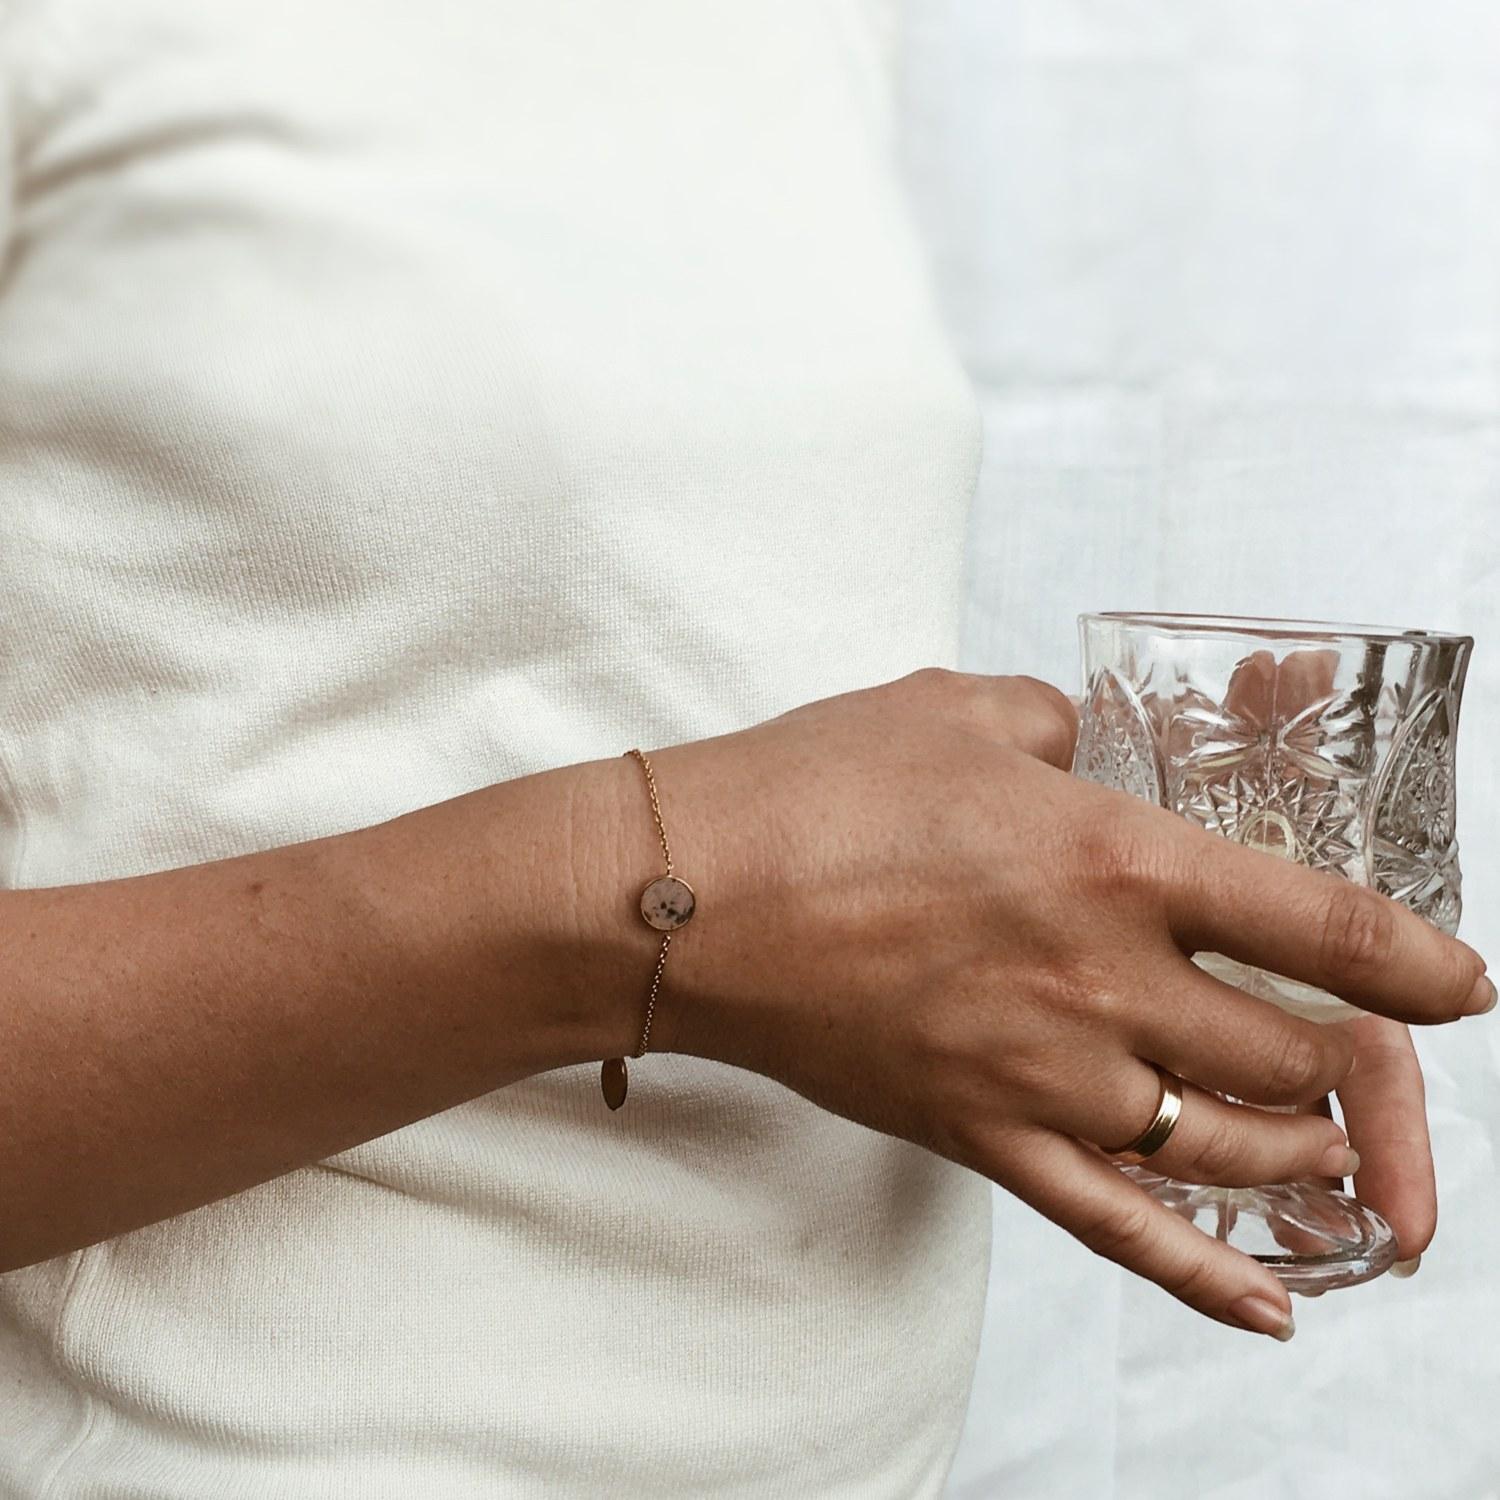 Dieses Armband mit einem rosagrauen Stein an einer zarten Goldkette ist ein schöner Schmuck für Ihr Handgelenk. Sein minimalistisches Design ermöglicht es Ihnen, ihn zu praktisch jedem Outfit zu tragen. Er eignet sich sowohl für elegante Ausflüge